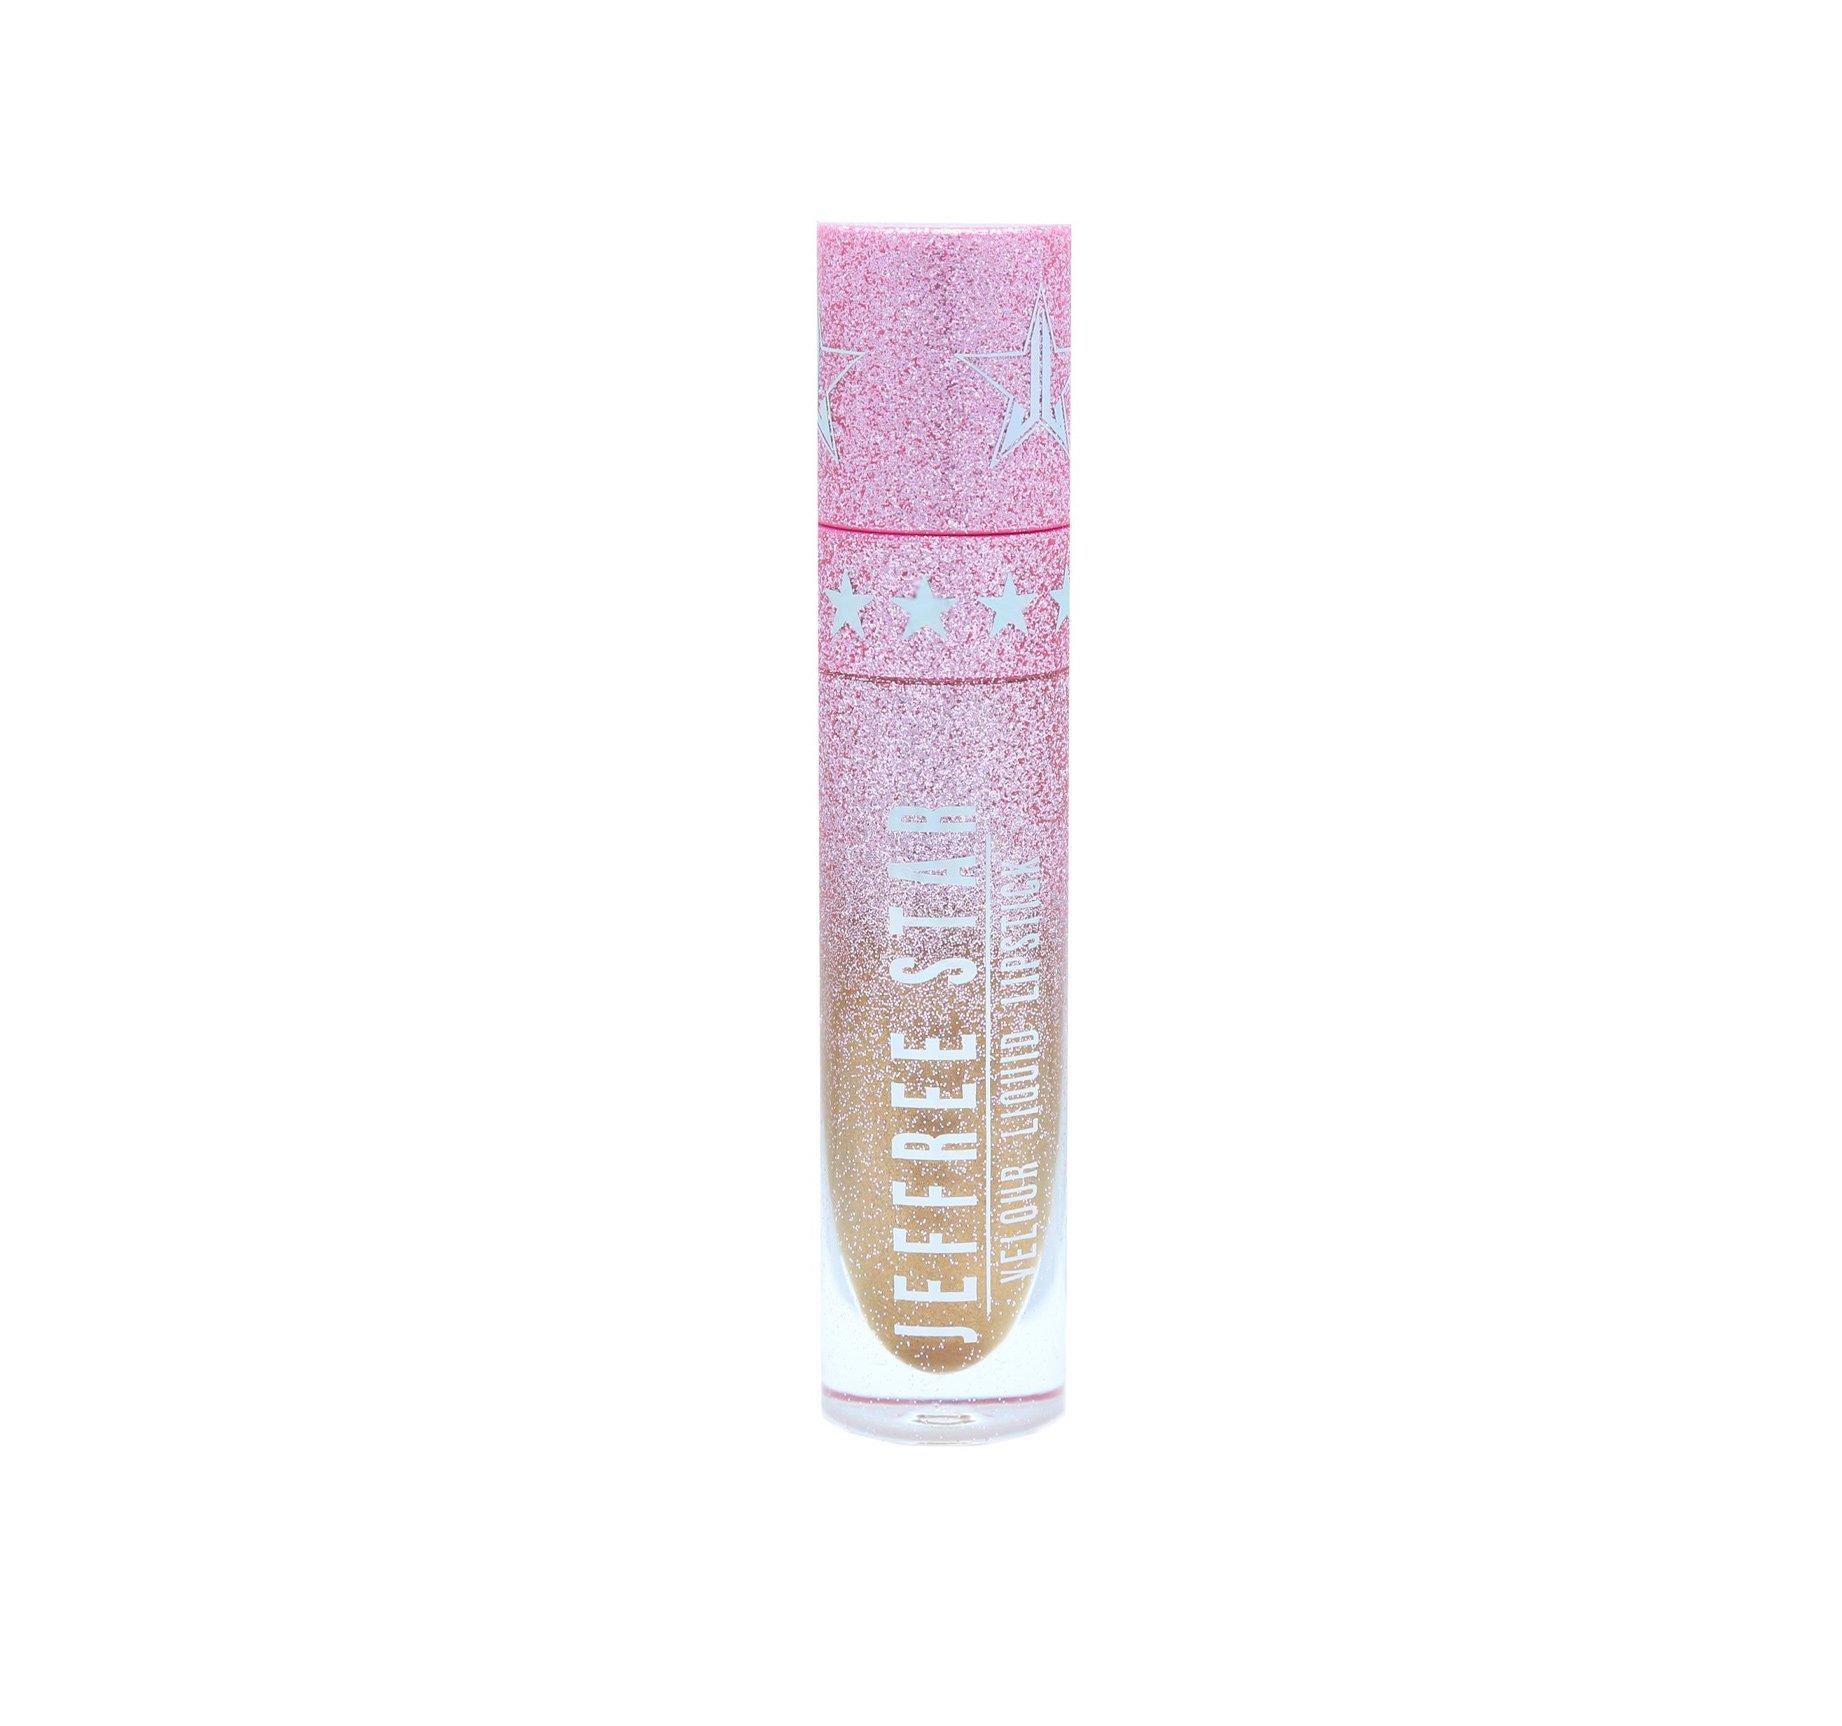 Jeffree Star Velour Liquid Lipstick First Class